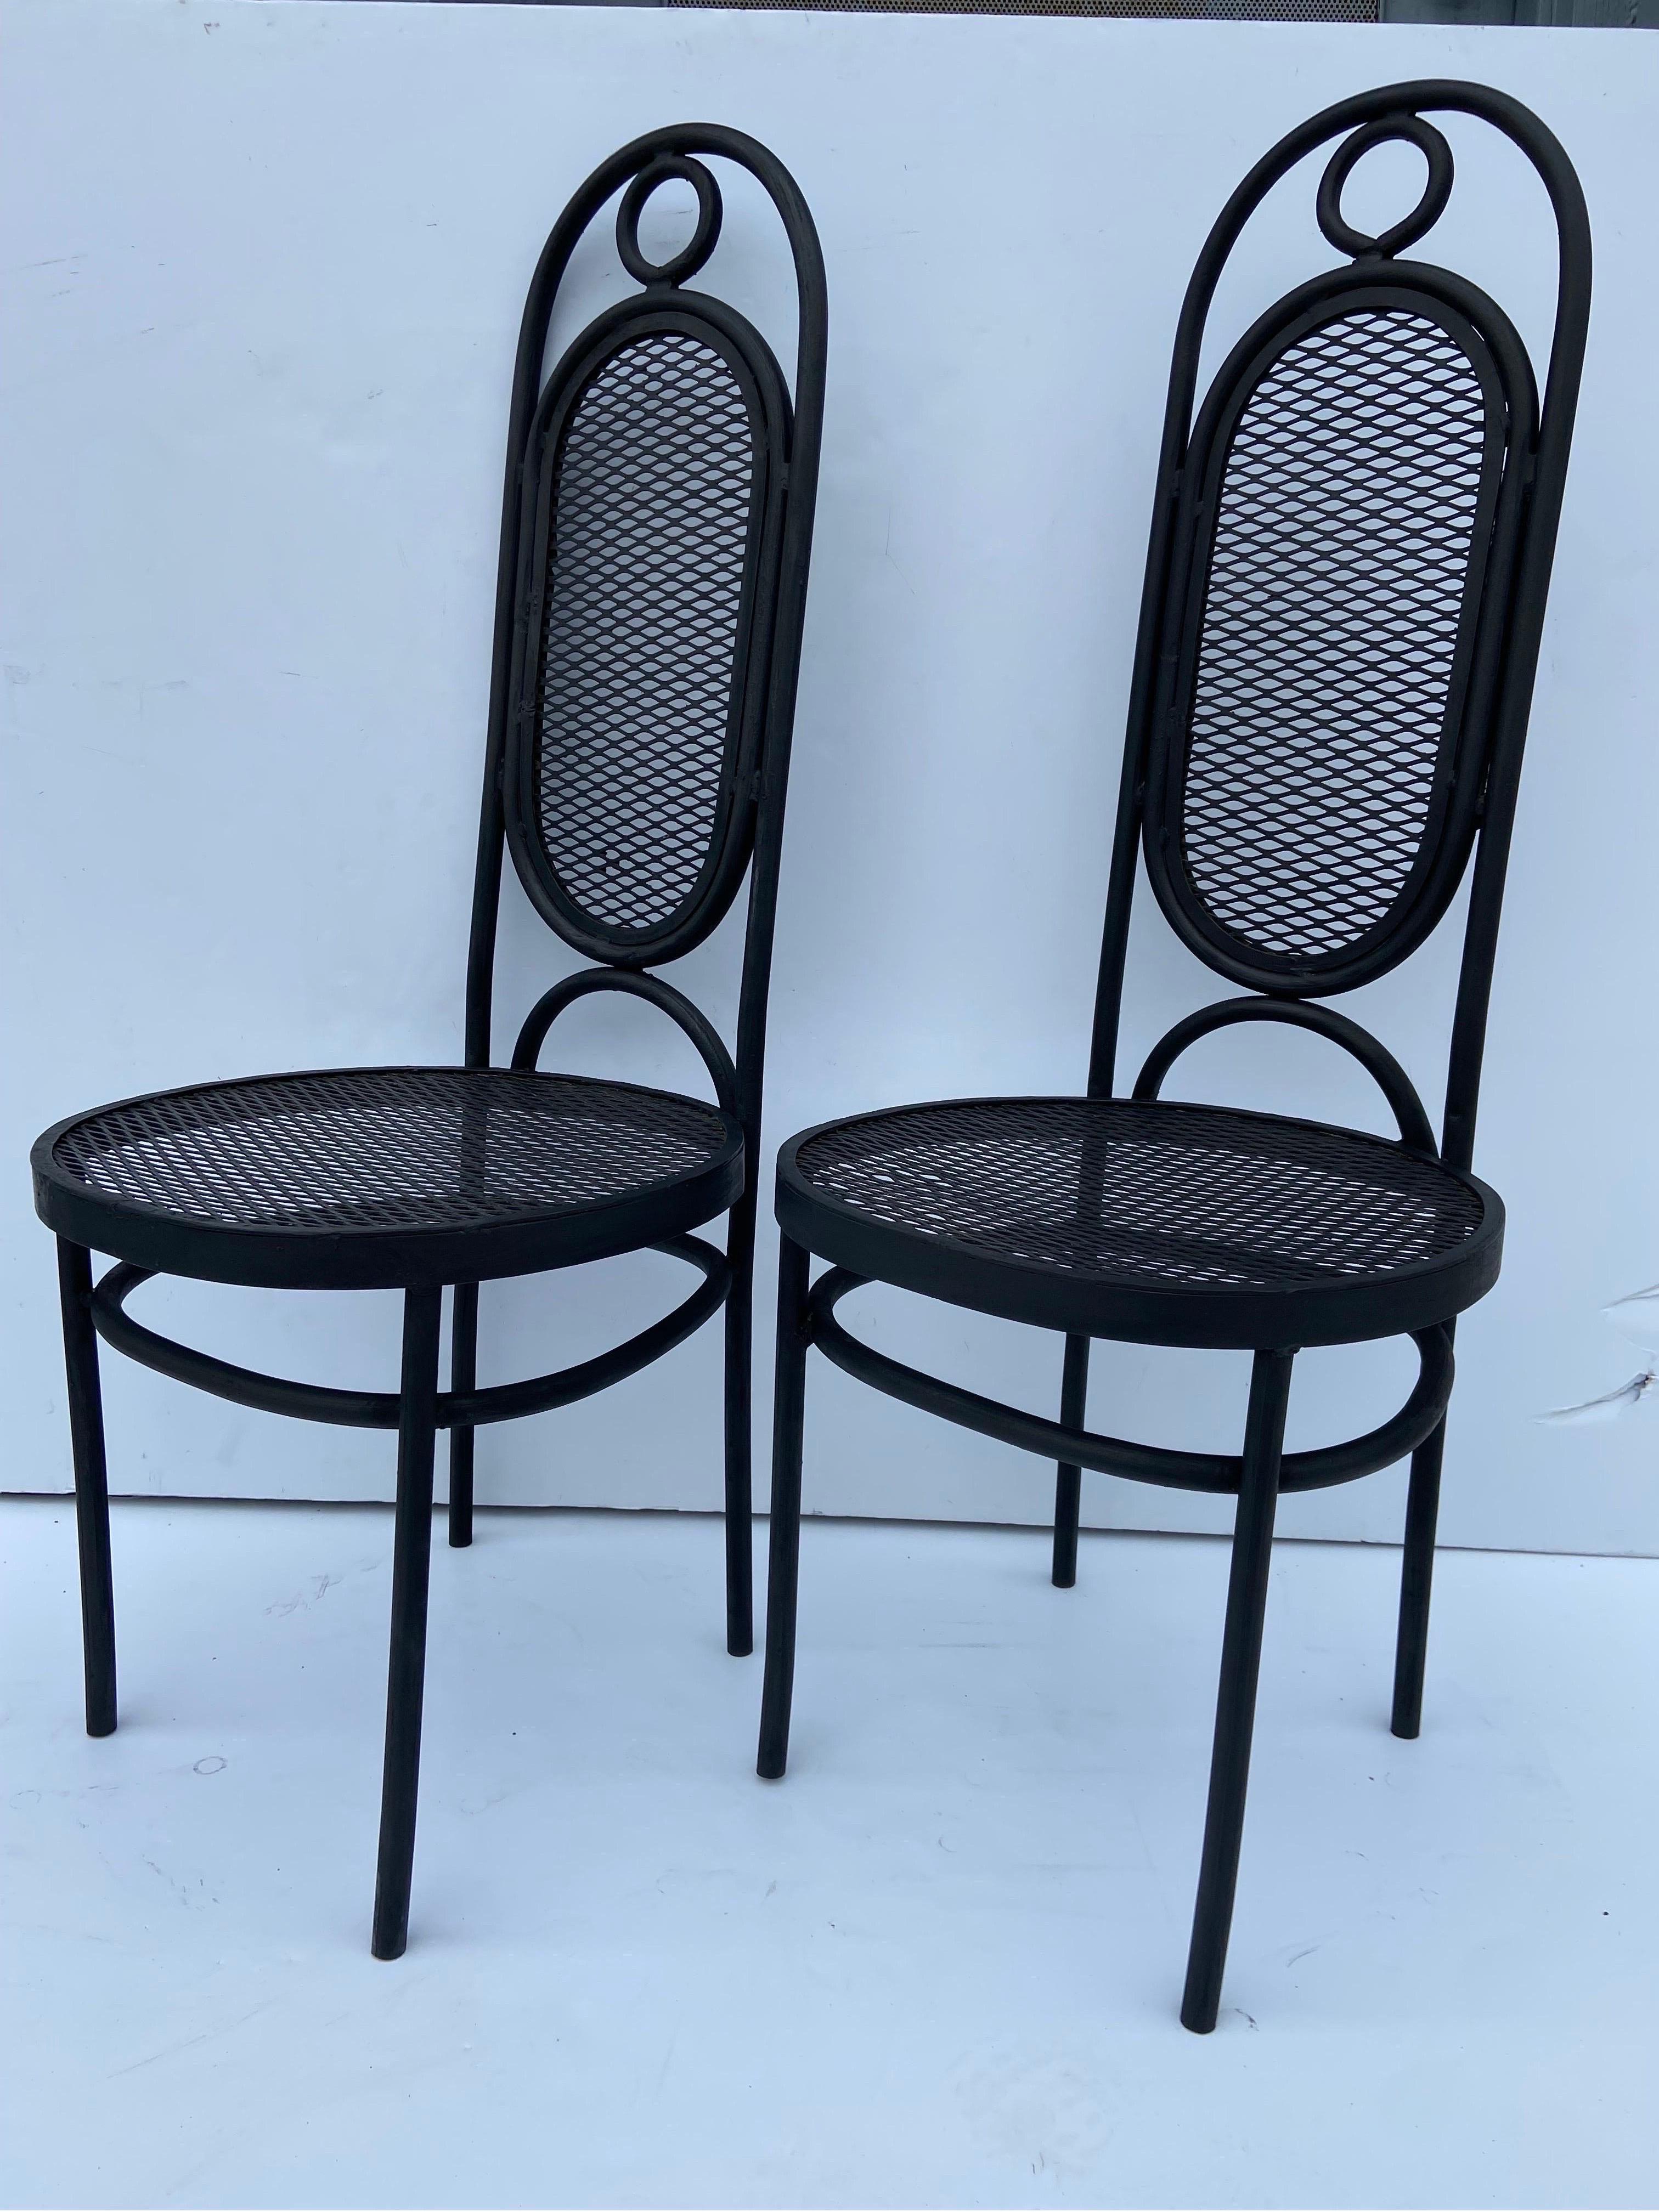 Ein Paar mexikanischer Garten- oder Beistellstühle aus Eisen aus den 1970er Jahren im Stil des bekannten Stuhls Modell 17, der von Michael Thonet entworfen und von Gebruder Thonet in den frühen 1860er Jahren hergestellt wurde. Dieses Paar